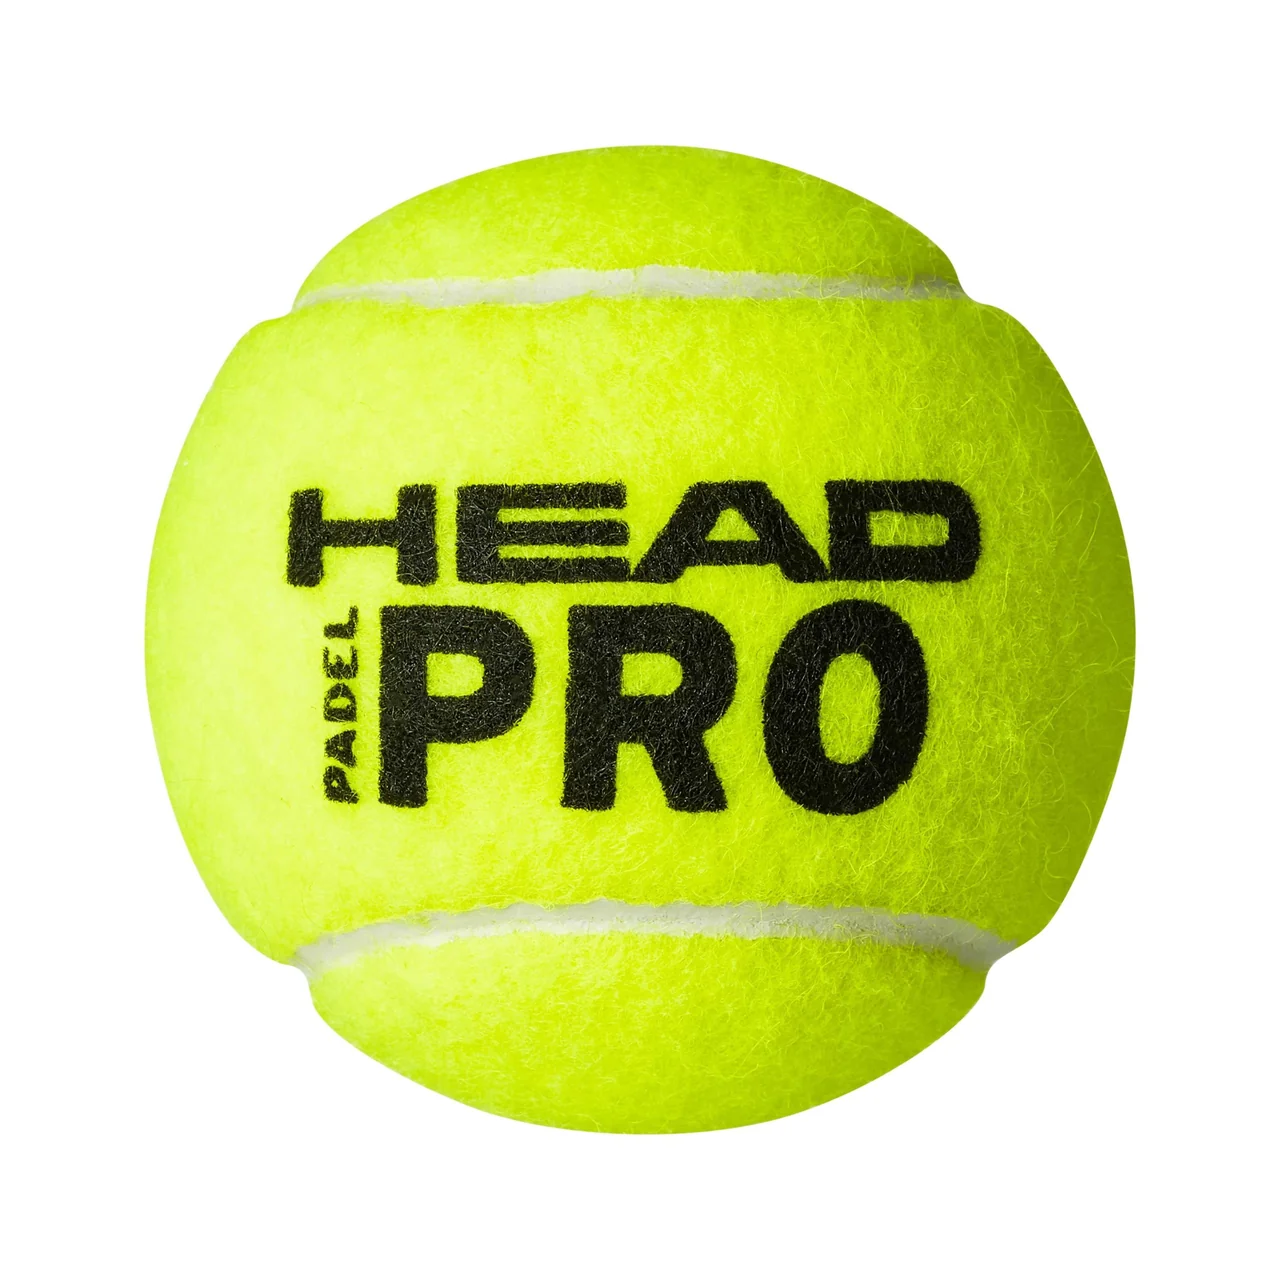 Head Head Padel Pro Ball 12 Kokers